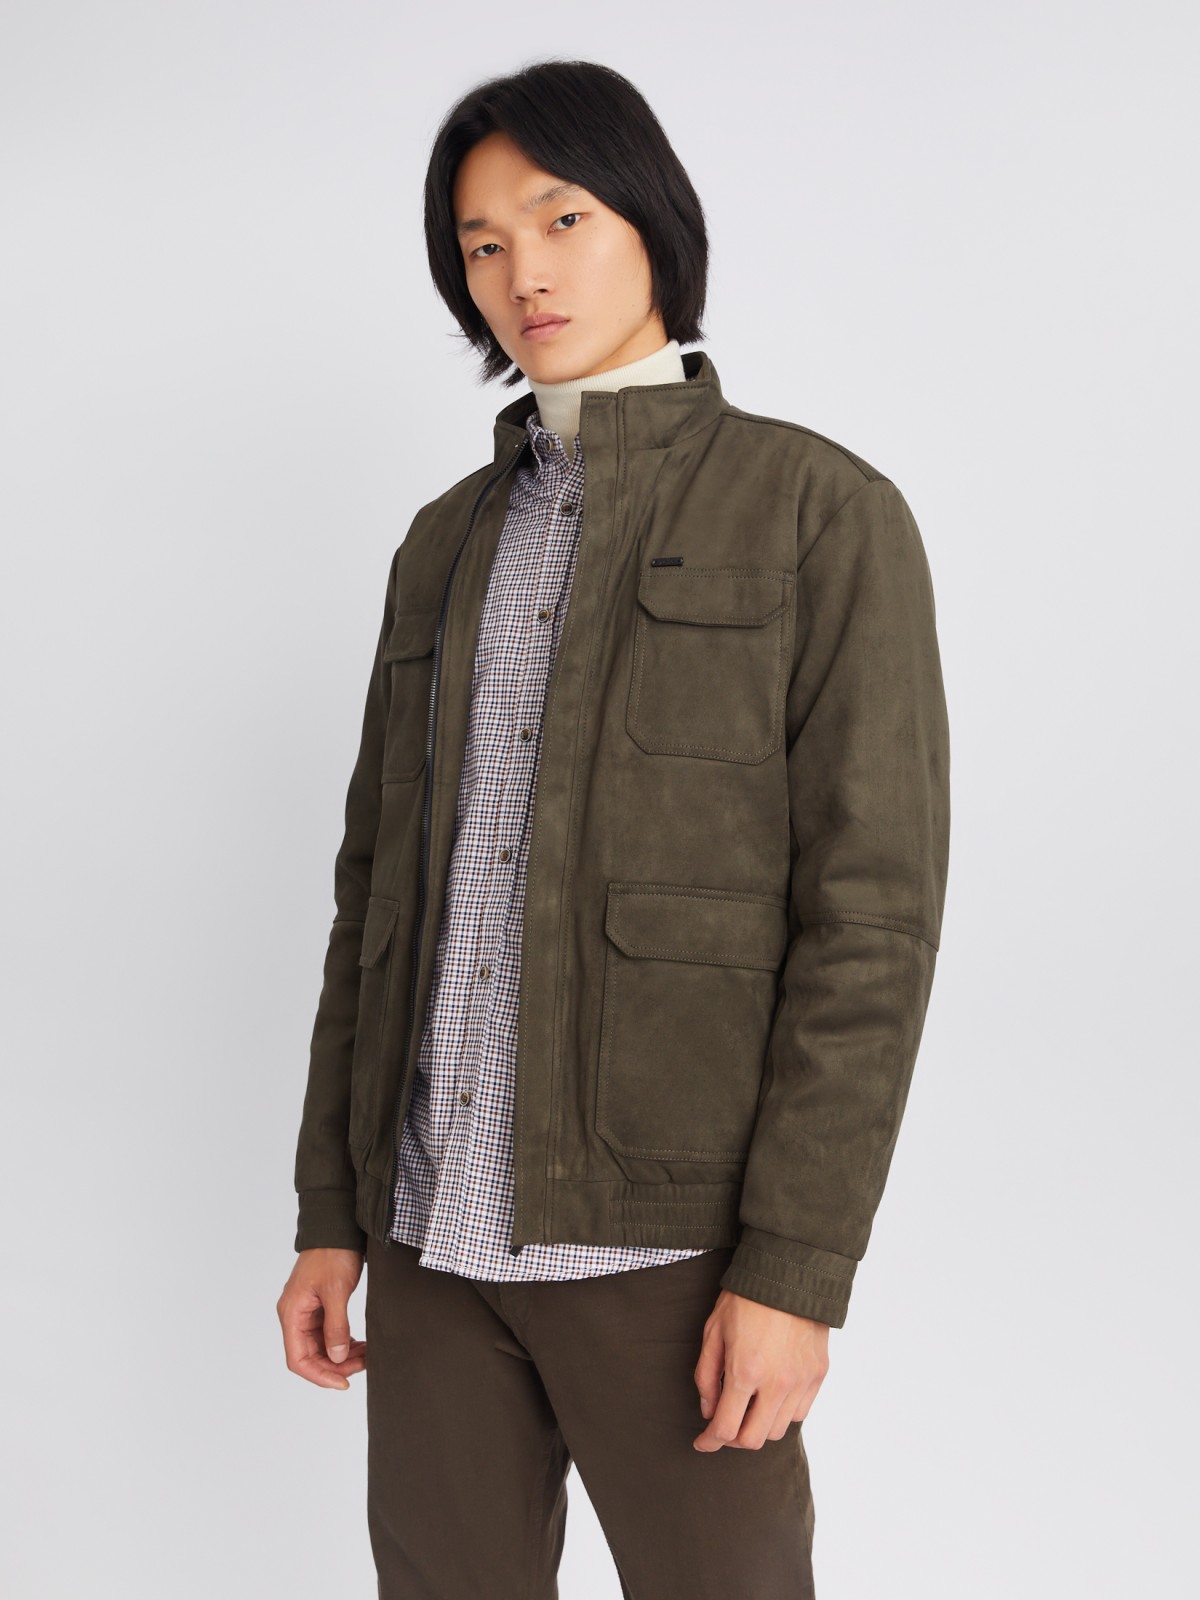 Утеплённая куртка из экозамши на синтепоне с воротником-стойкой zolla 013335139164, цвет хаки, размер M